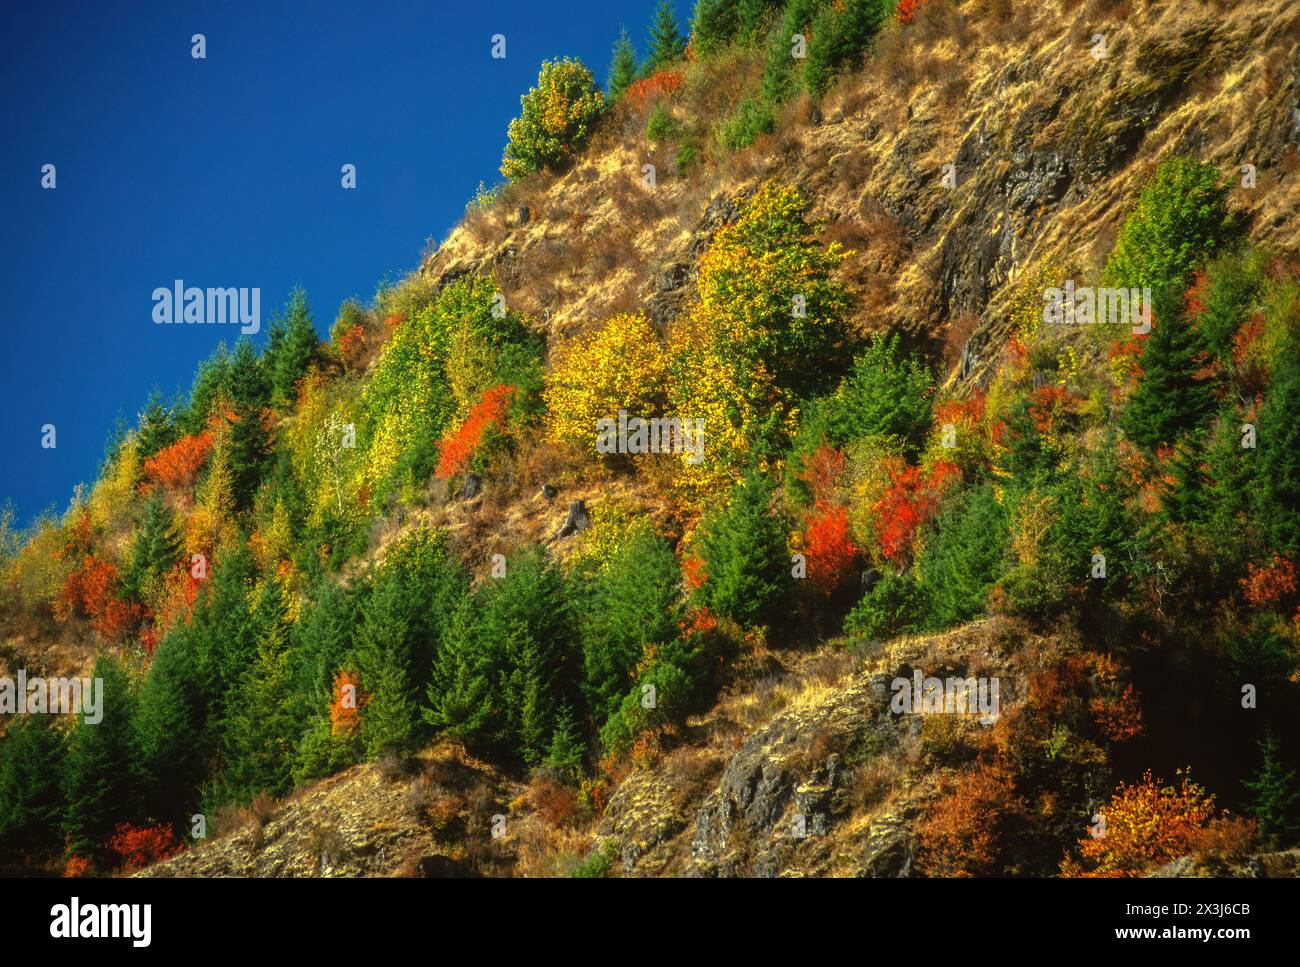 Mt. Saint Helens, Washington. Couleurs des feuillages d'automne le long de la State Highway 504 jusqu'à Mt. Saint Helens. Banque D'Images